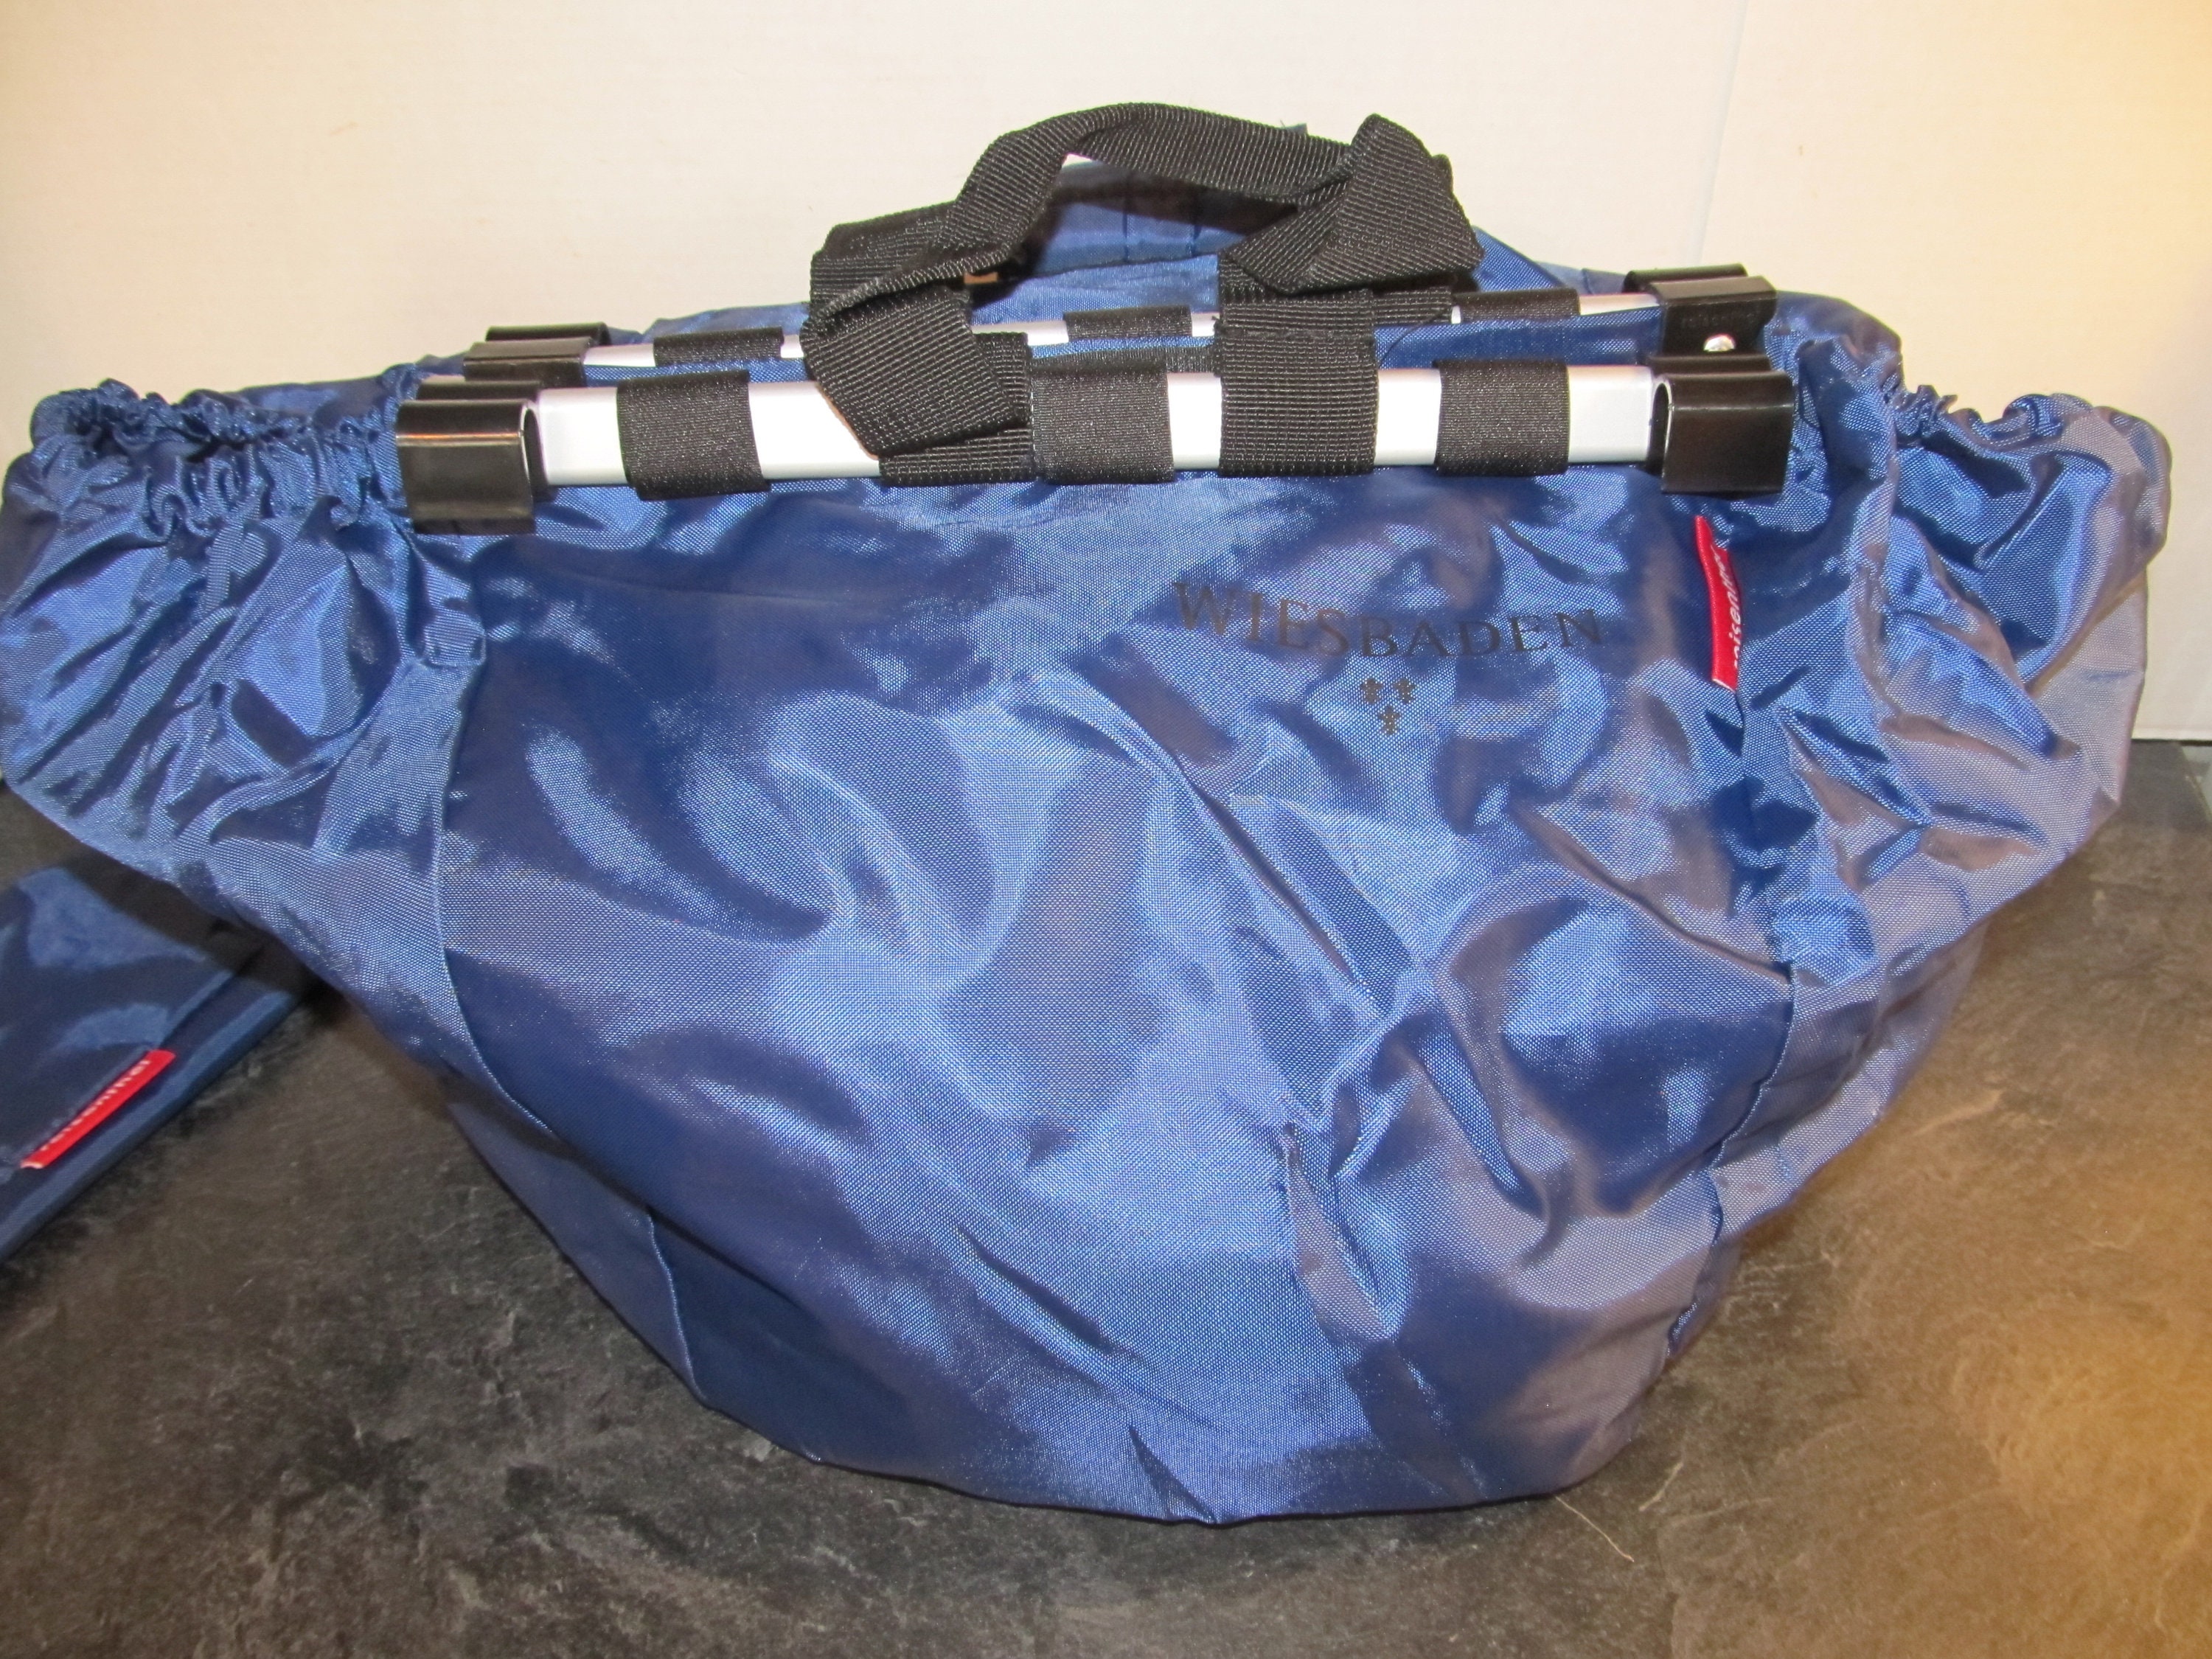 Reisenthel Easyshoppingbag for Shopping Cart Navy Blue New Folding Nylon  Shopping Tote Bag Reusable Market Craft Bag 